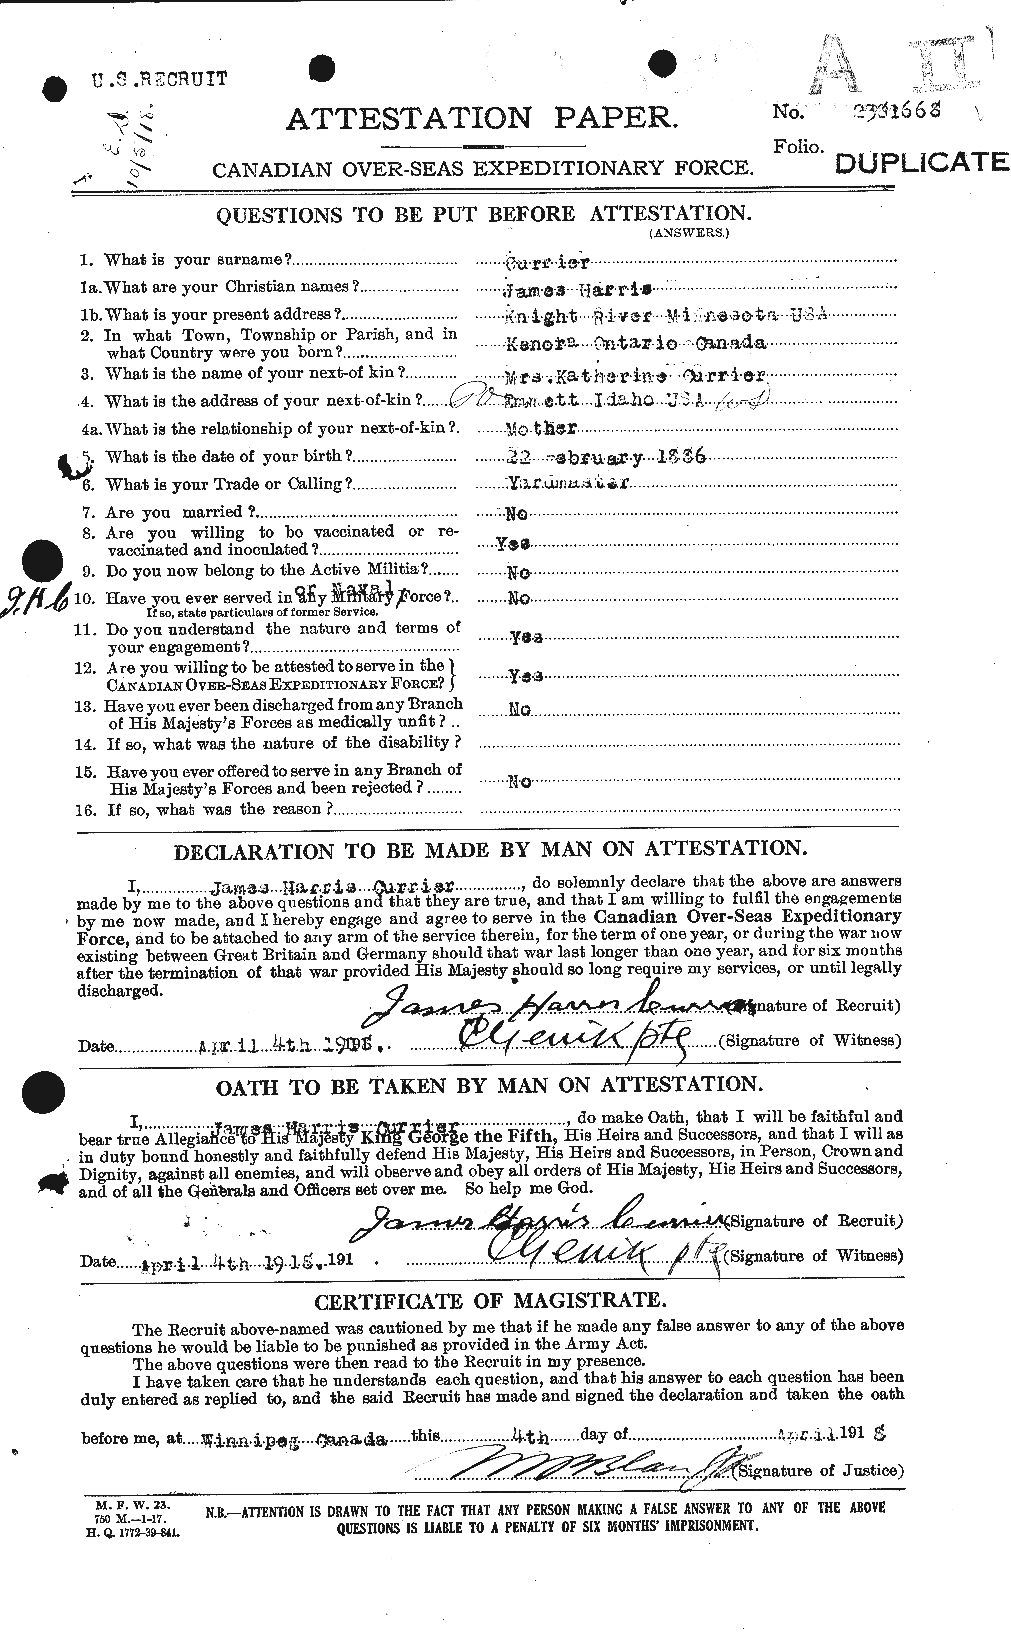 Dossiers du Personnel de la Première Guerre mondiale - CEC 071413a